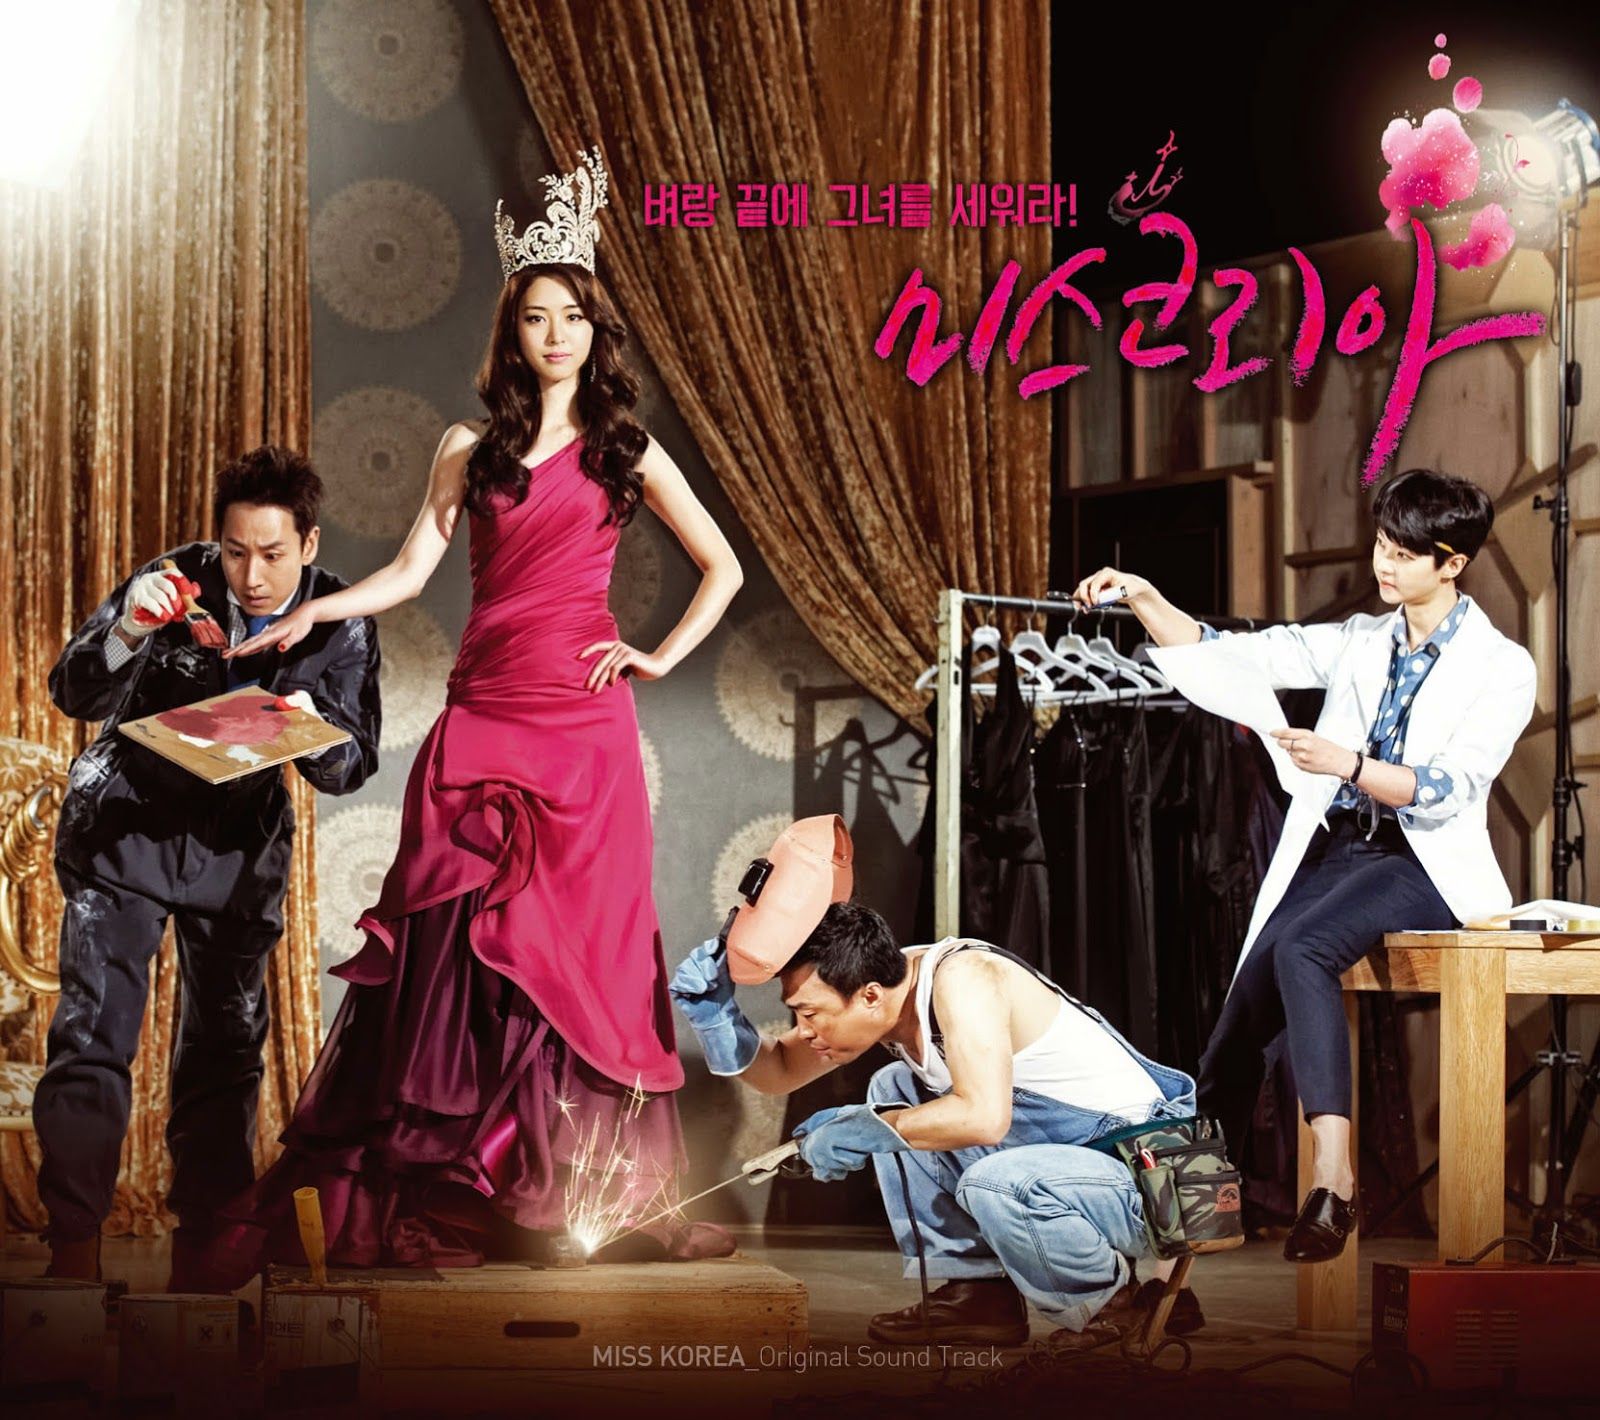 Free download lagu ost drama korea 49 days sub indonesia